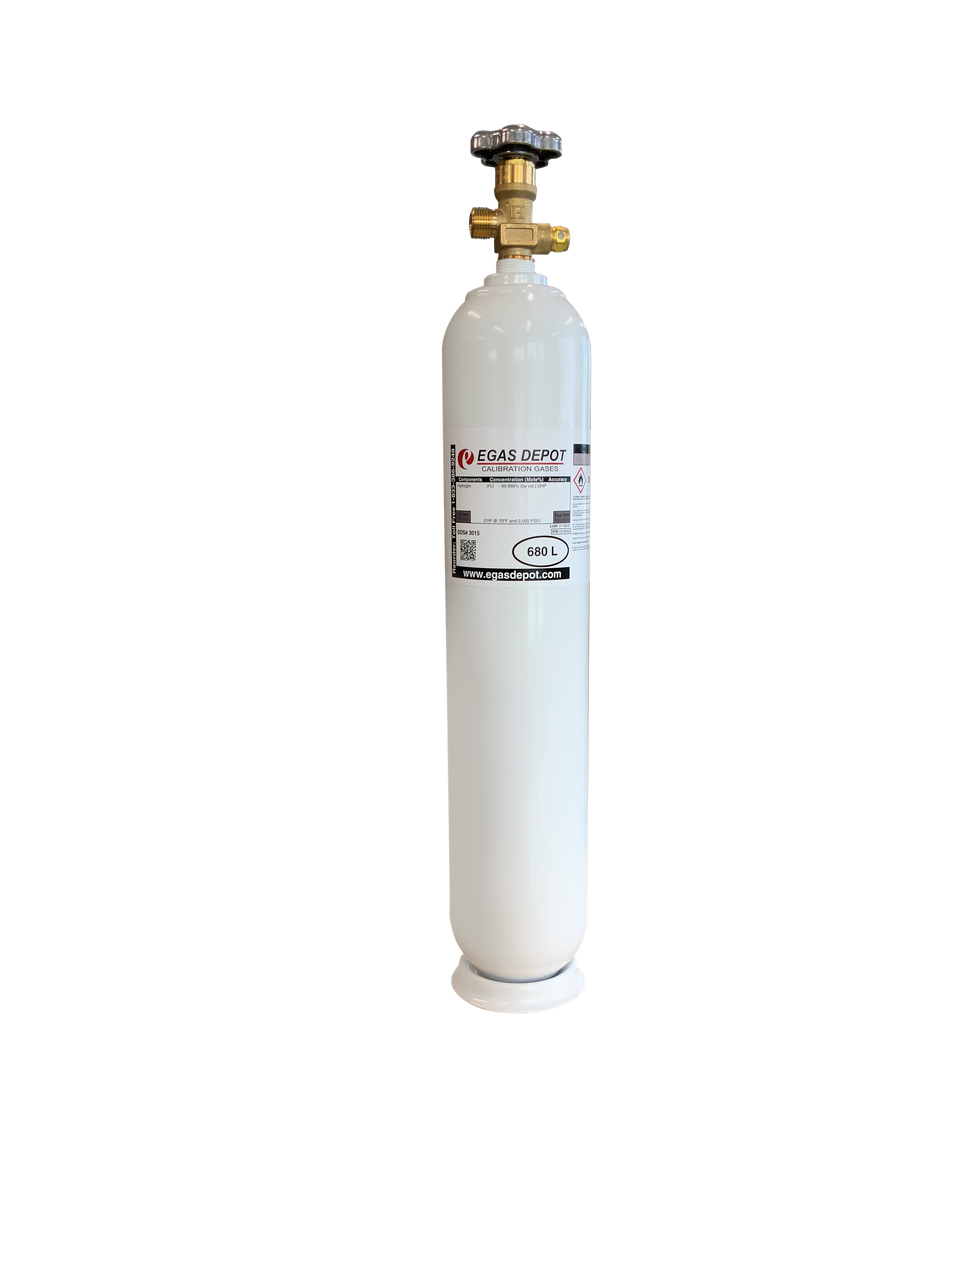 680 Liter-Hexane 3,000 ppm/ Air